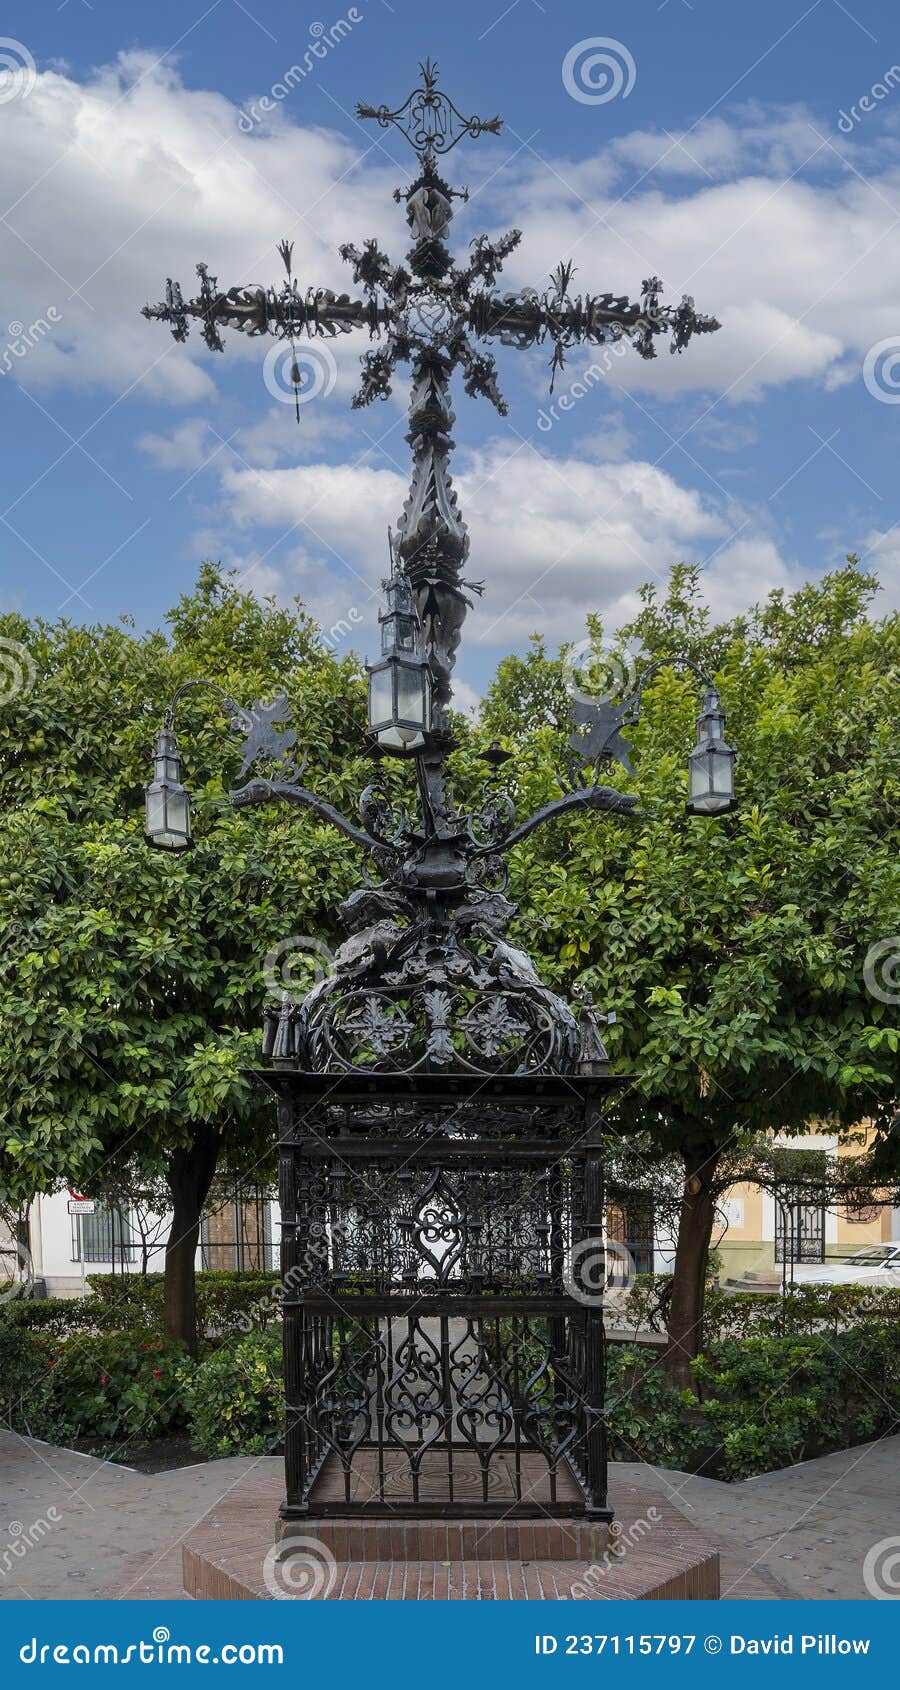 cruz de la cerrajeria, the locksmith cross, located in plaza santa cruz in seville, spain.